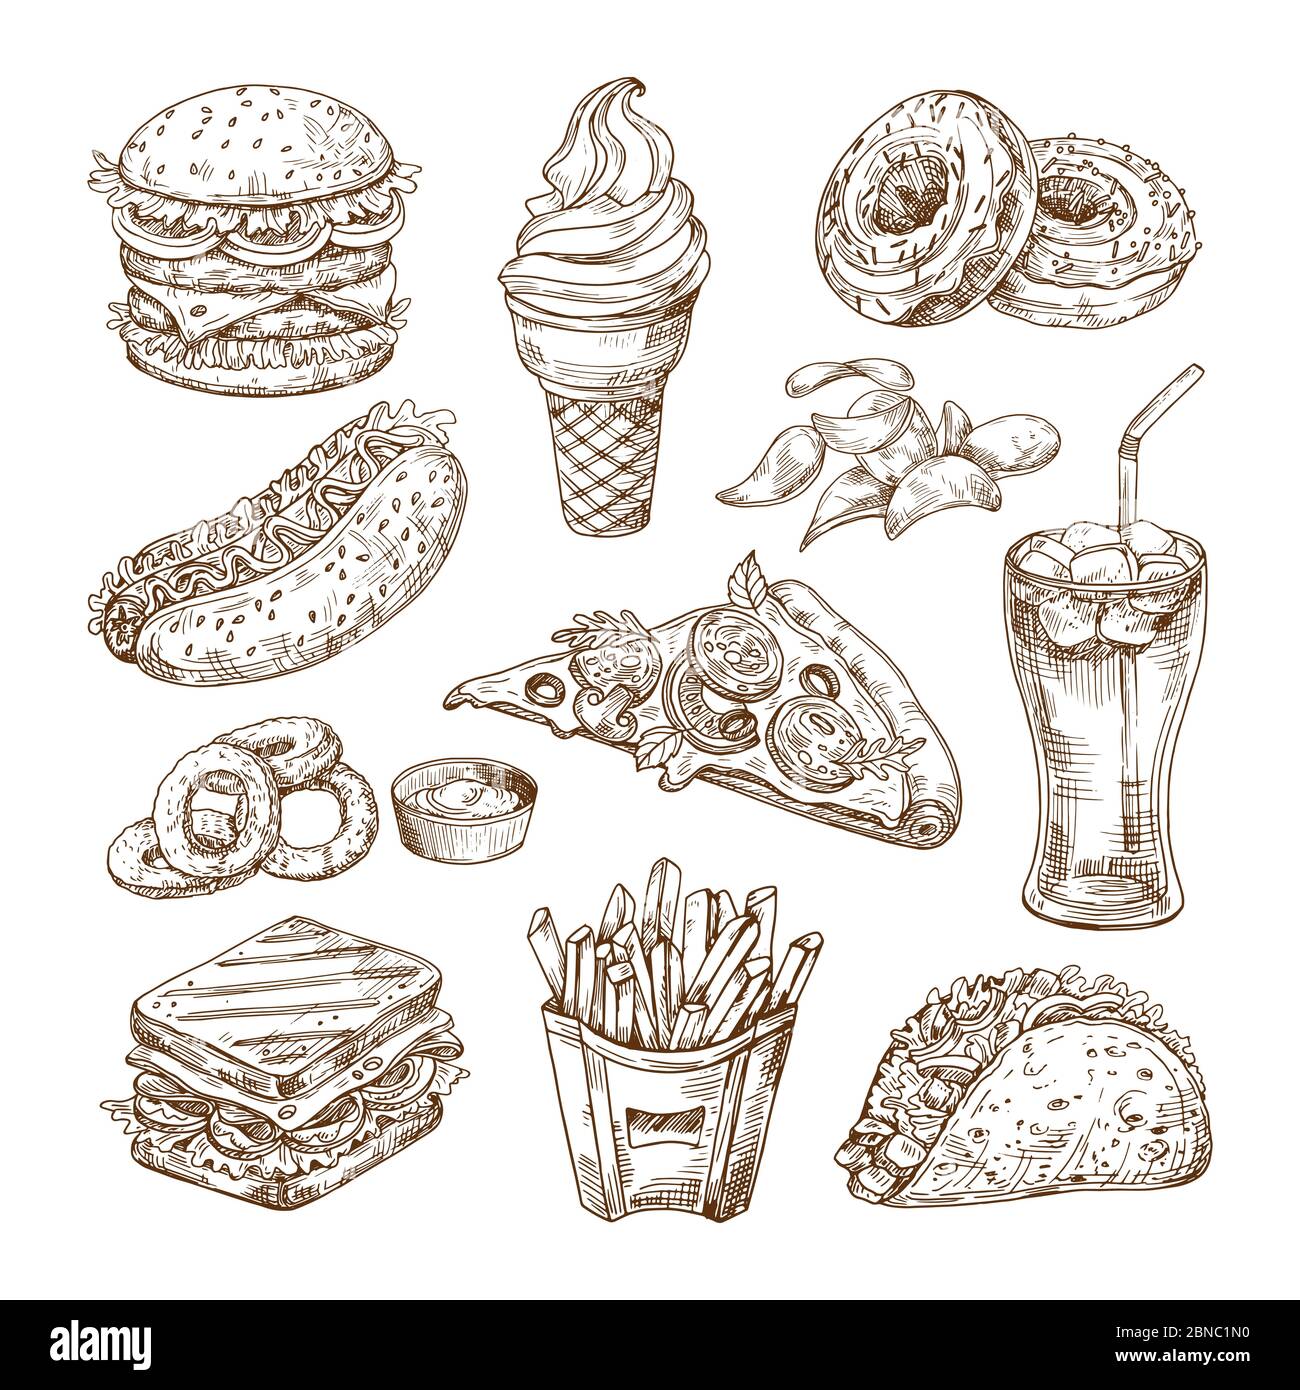 Skizzieren Sie Fast Food. Burger Hot Dog, Sandwich Snacks, Chips und Eis, Cola Pizza. Handgezeichnetes Fast Food Vektorset. Hamburger und Pizza, Sandwich-Essen, Menü Fast-Food-Illustration Stock Vektor